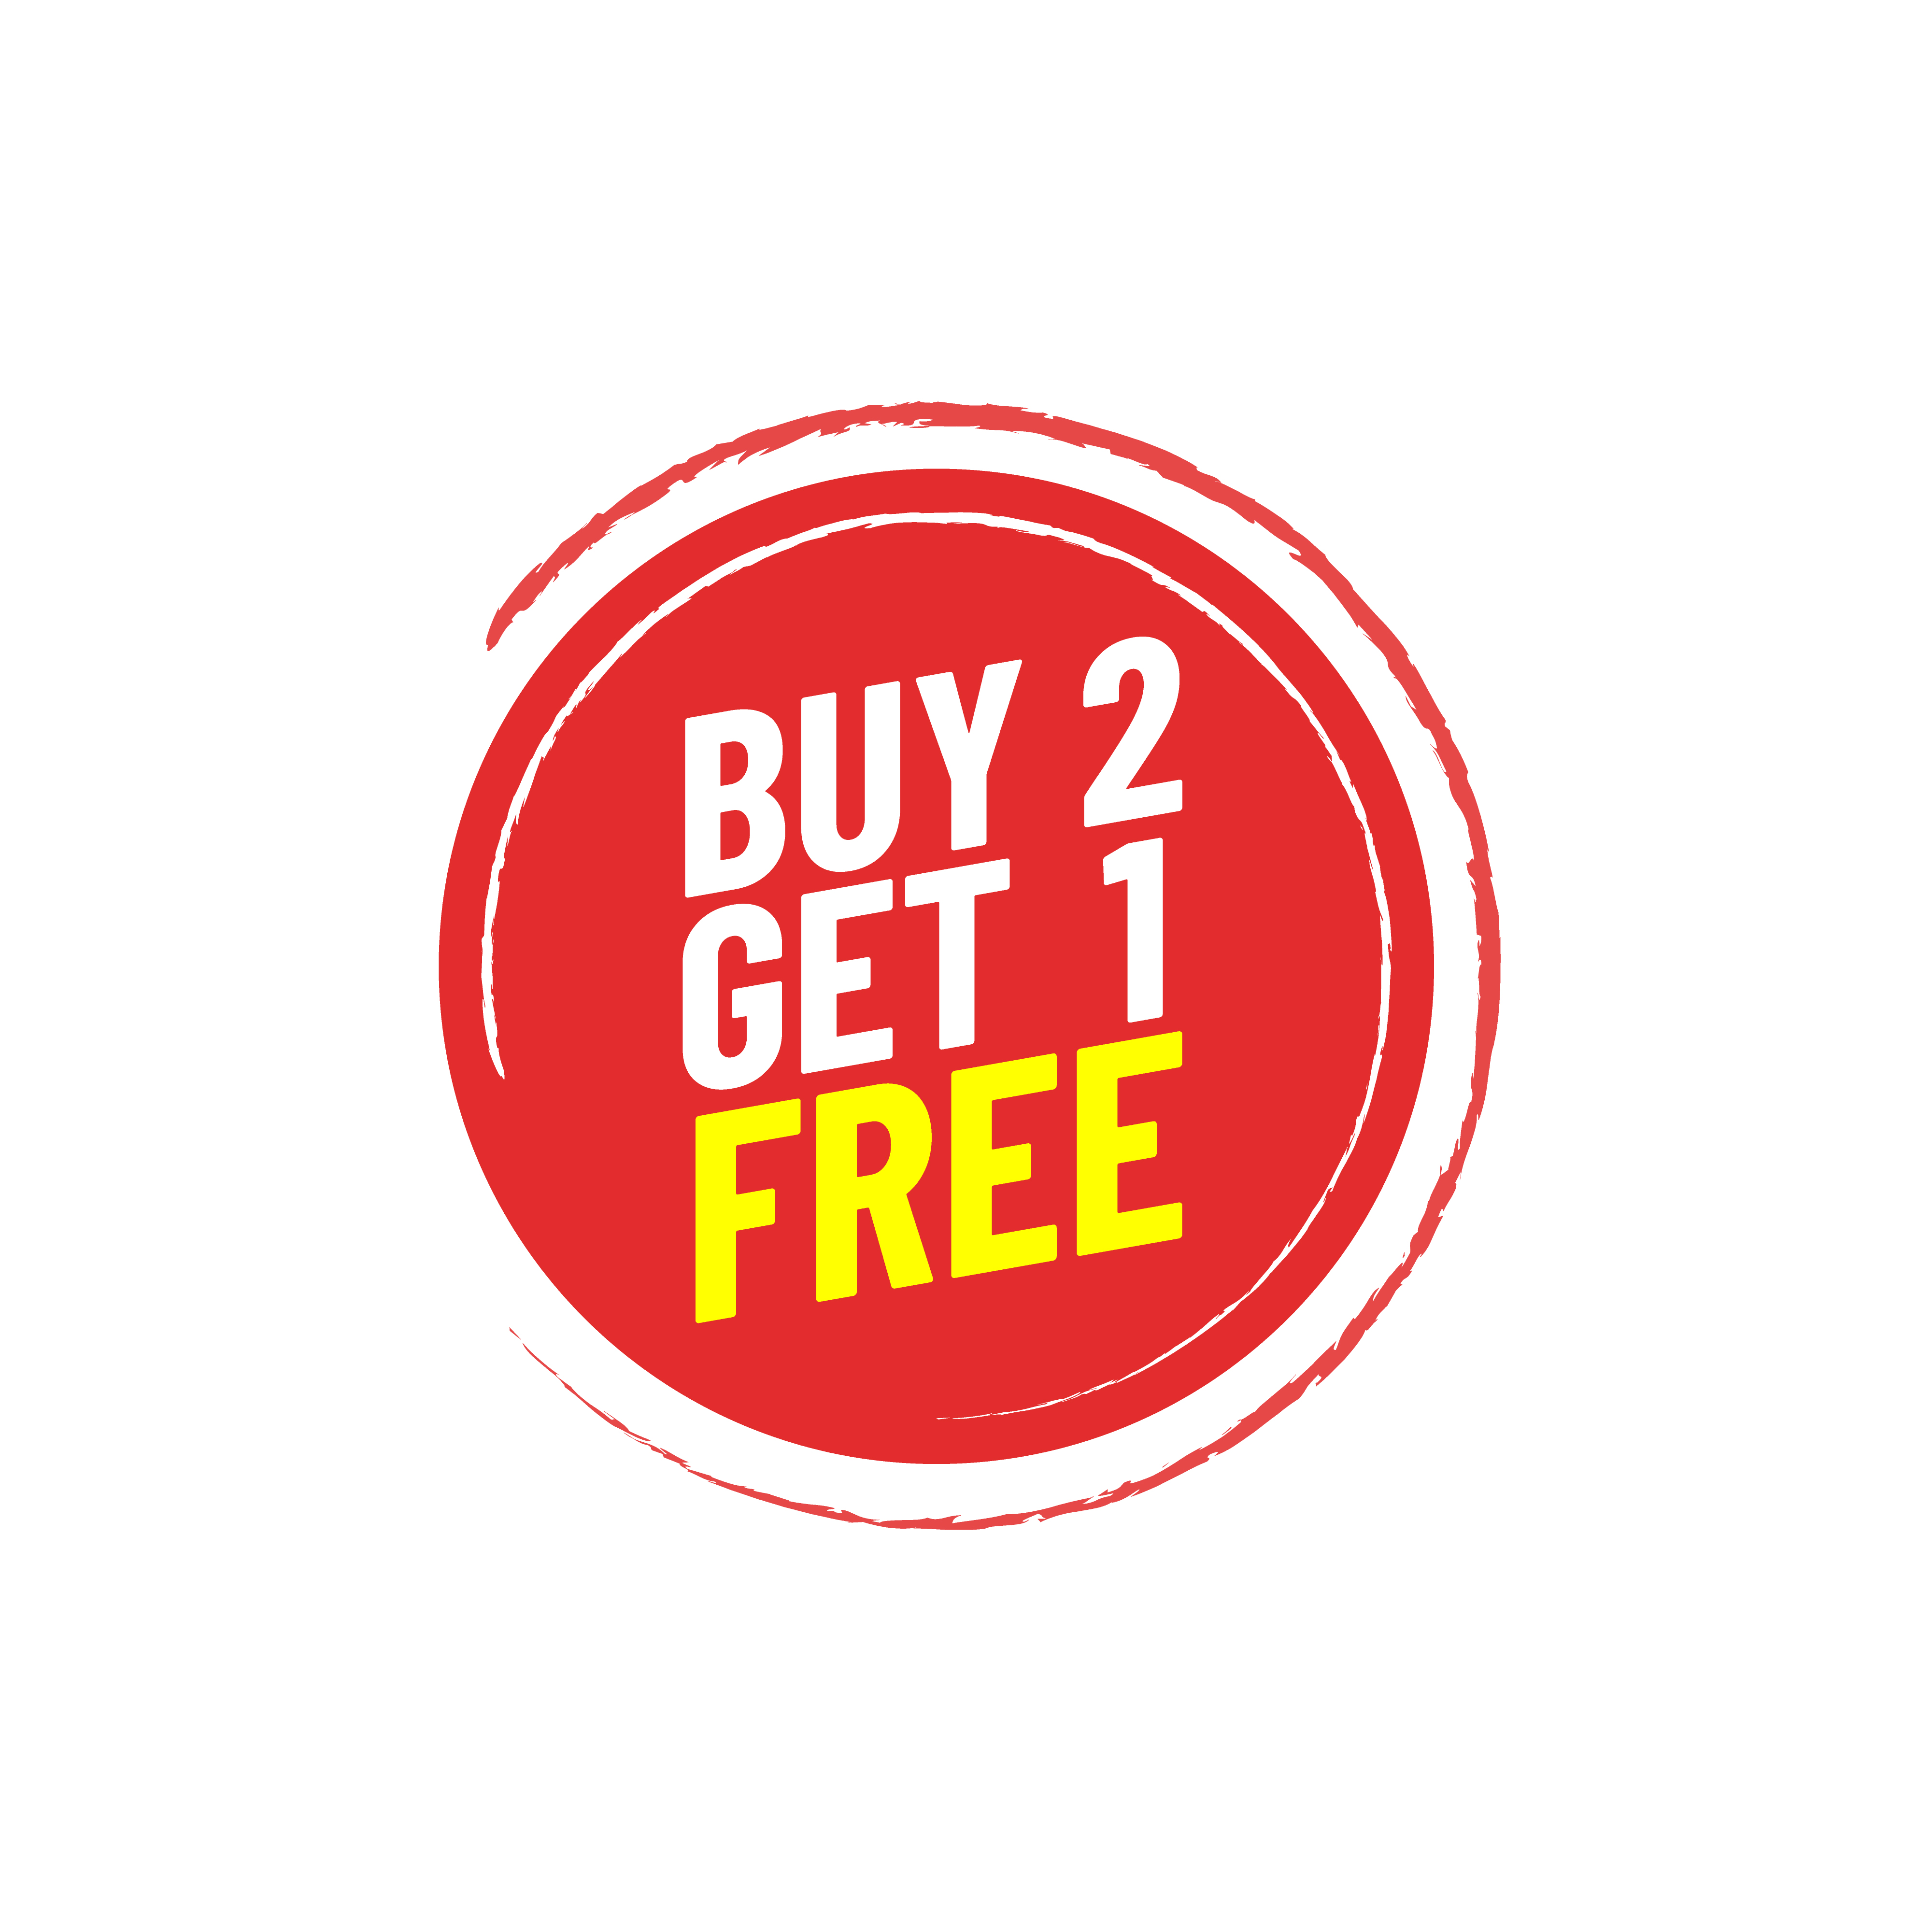 Buy 2 get 1 free emblem 1222899 - Download Free Vectors, Clipart